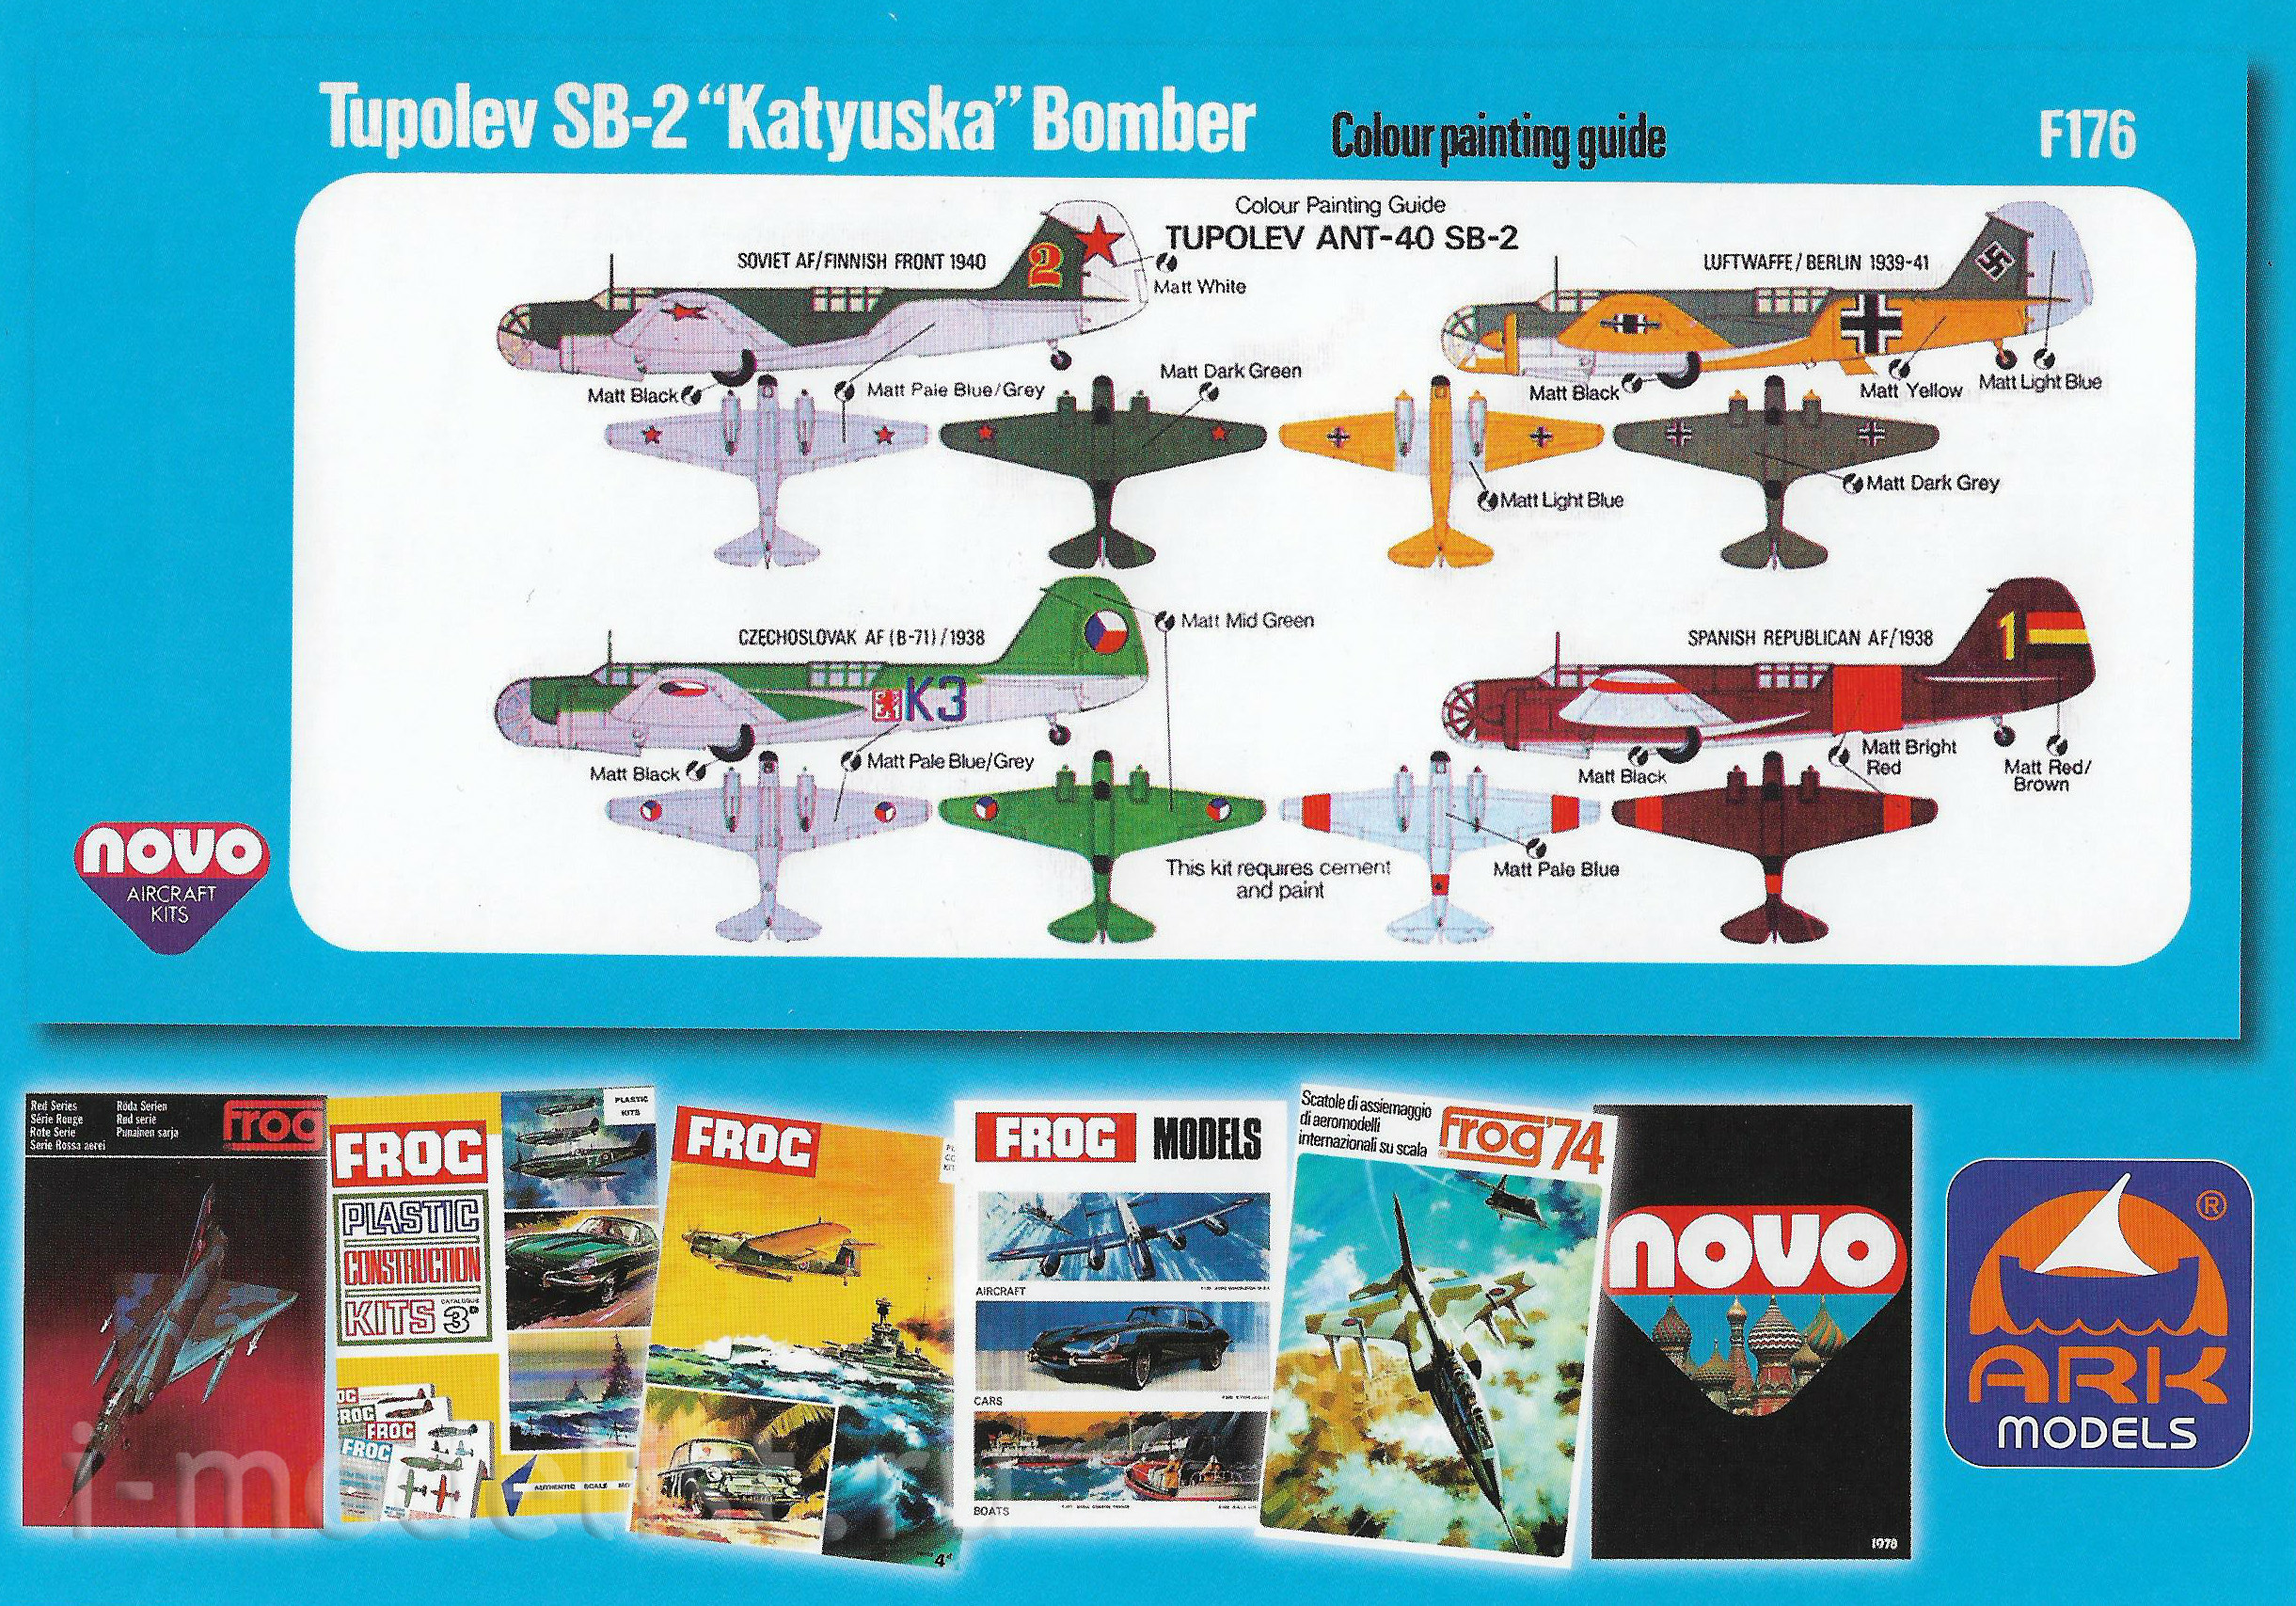 72002 ARK-models 1/72 Советский фронтовой бомбардировщик СБ-2